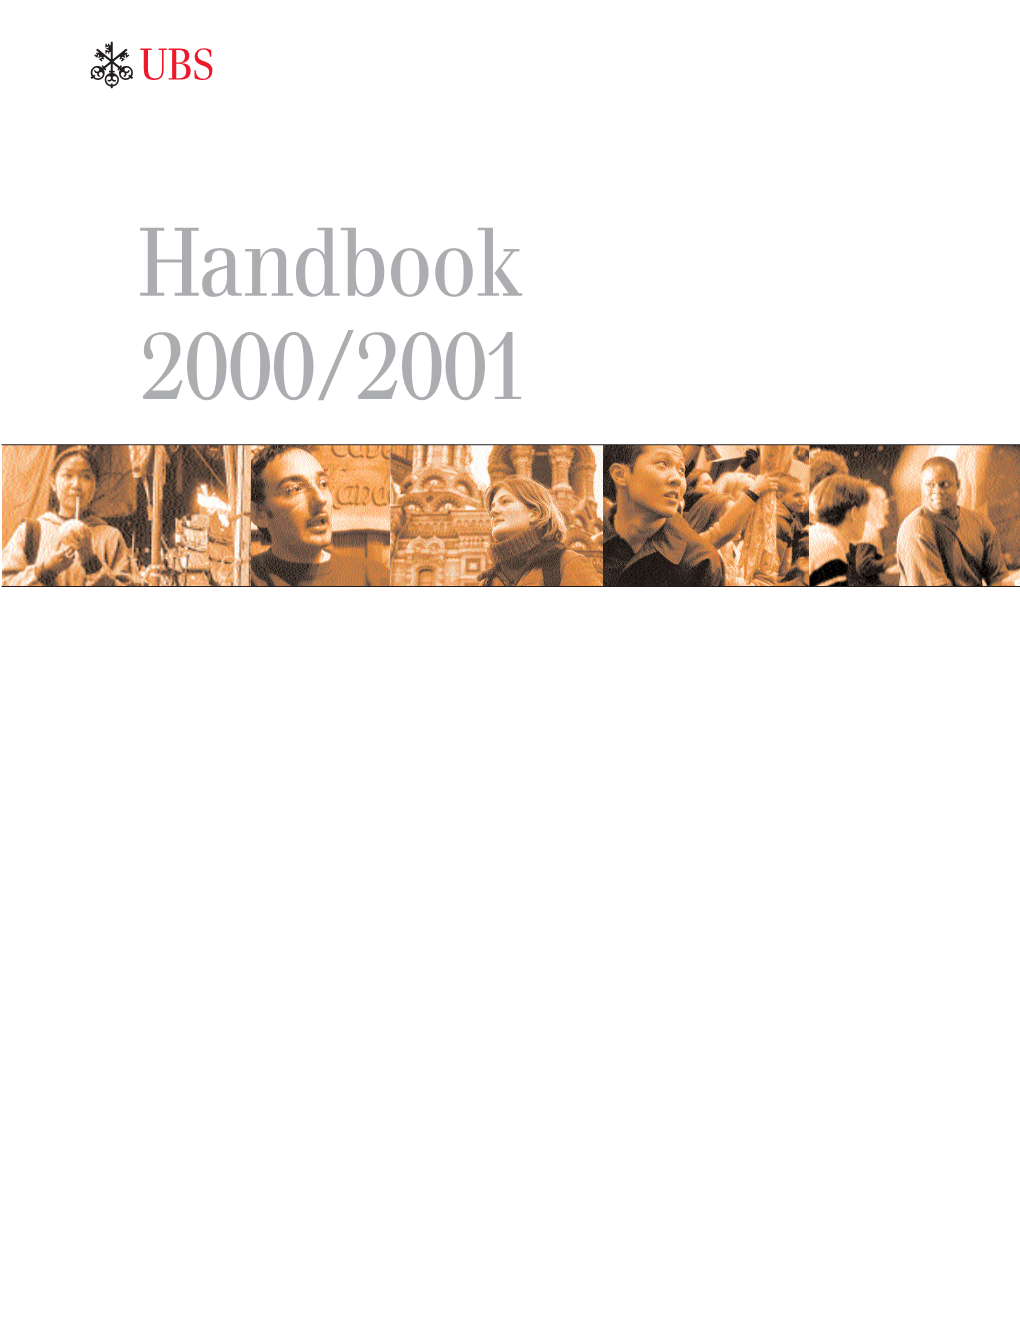 Handbook 2000/2001 Our Information Portfolio